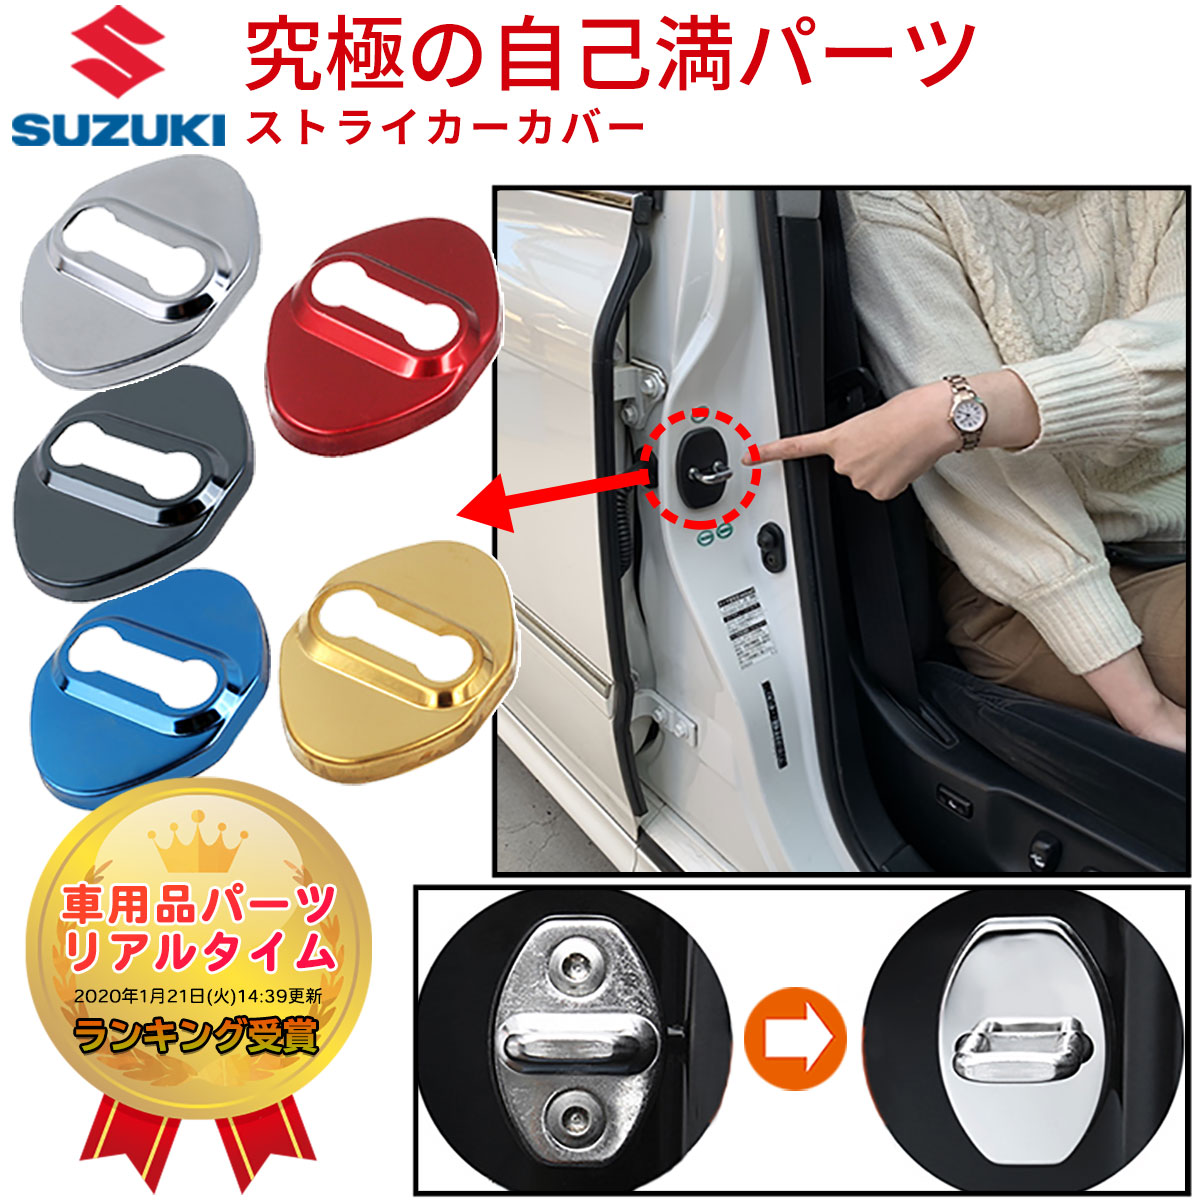 スズキ SUZUKI ロゴなし ドア ストライカー カバー ステンレス鋼製 Type:A Negesu(ネグエス) 【ランキング受賞】【送料無料】